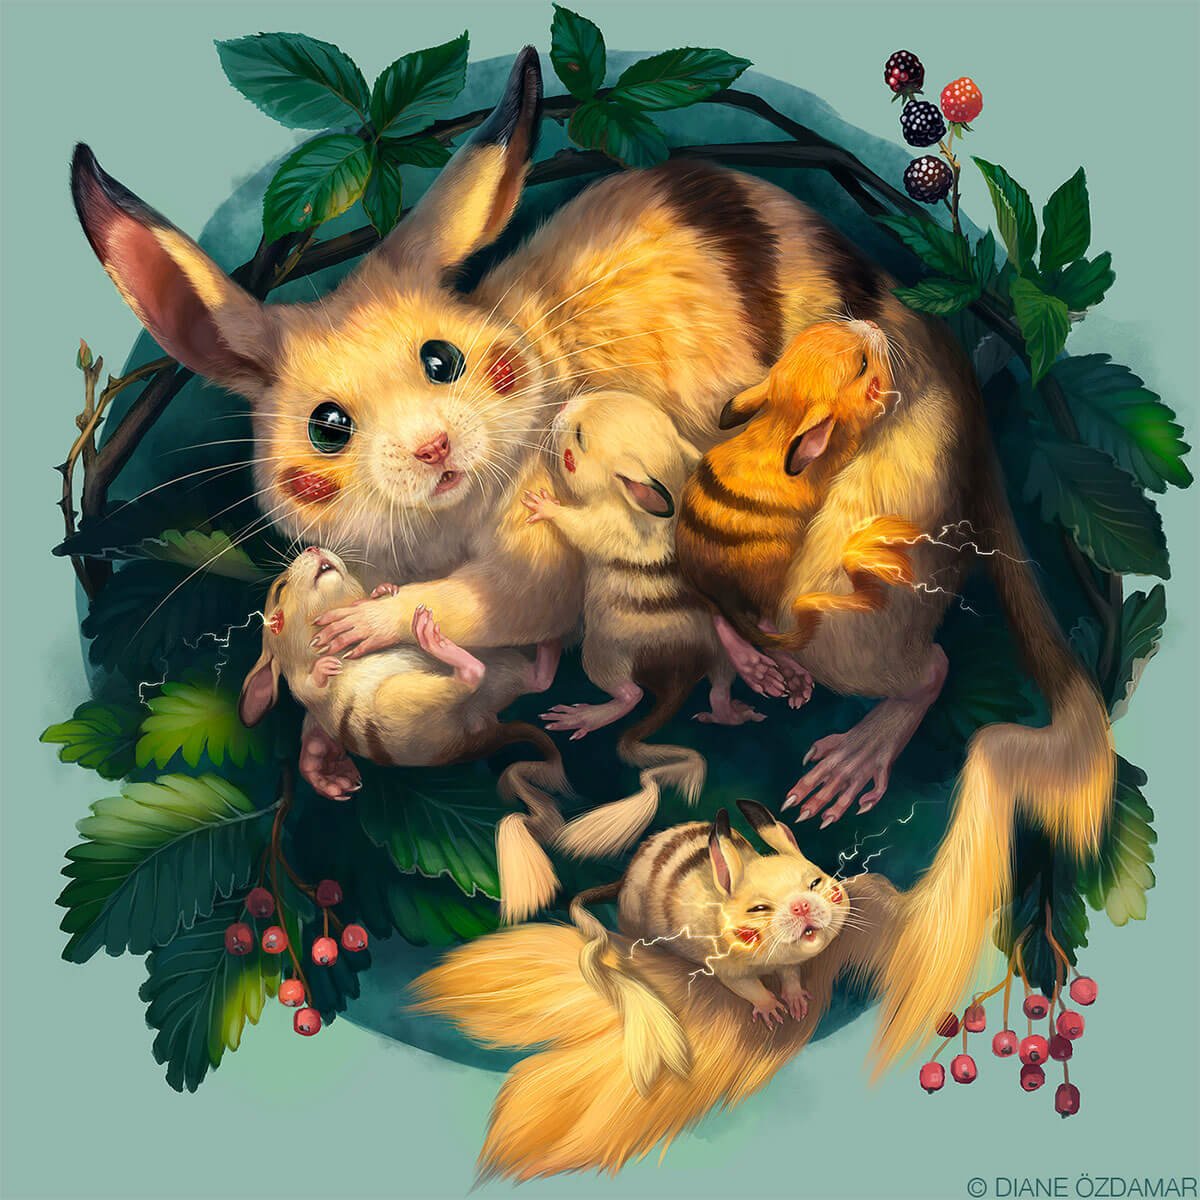 A nest of Pikachu by Diane ÖZDAMAR